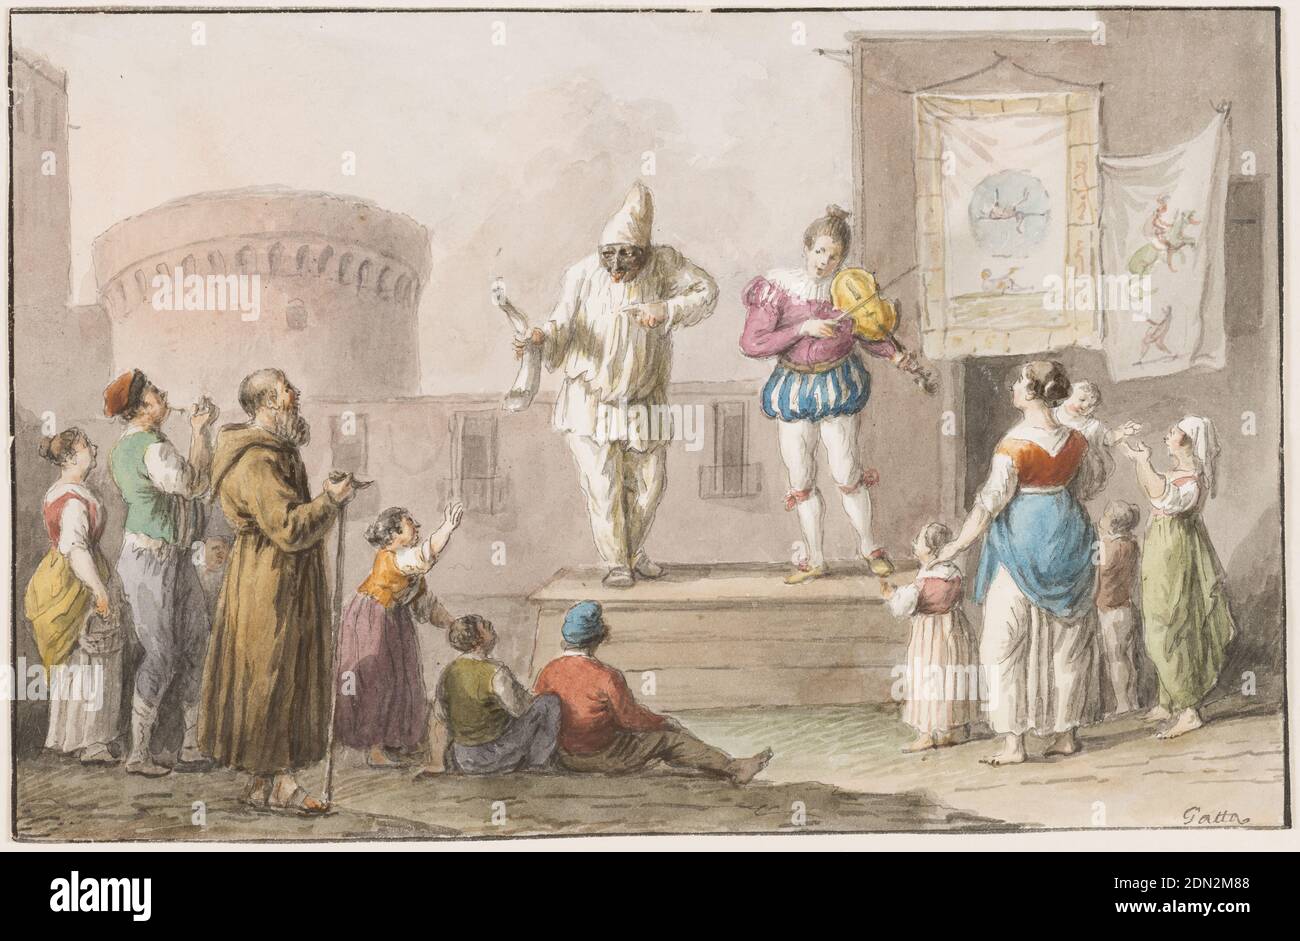 Couleur de l'eau; Performers d'un Commedia dell'Arte, Saverio della Gatta, Italien, 1777 - 1829, couleurs de plume et d'encre noire et d'eau sur papier, rectangle horizontal. Pulcinella portant une corne dans sa main droite et pointant avec l'index gauche sur quelqu'un, se dresse sur un podium devant le coin d'une structure dans le quartier du Castel Nuovo à Naples. À côté de lui se trouve une fille dans la tenue d'une page du XVIe siècle et jouant du violon. Deux chiffons ornés de peintures sont suspendus comme des affiches au-dessus de la porte d'entrée. Les femmes et les enfants ont raison; les enfants, une femme et un homme Banque D'Images